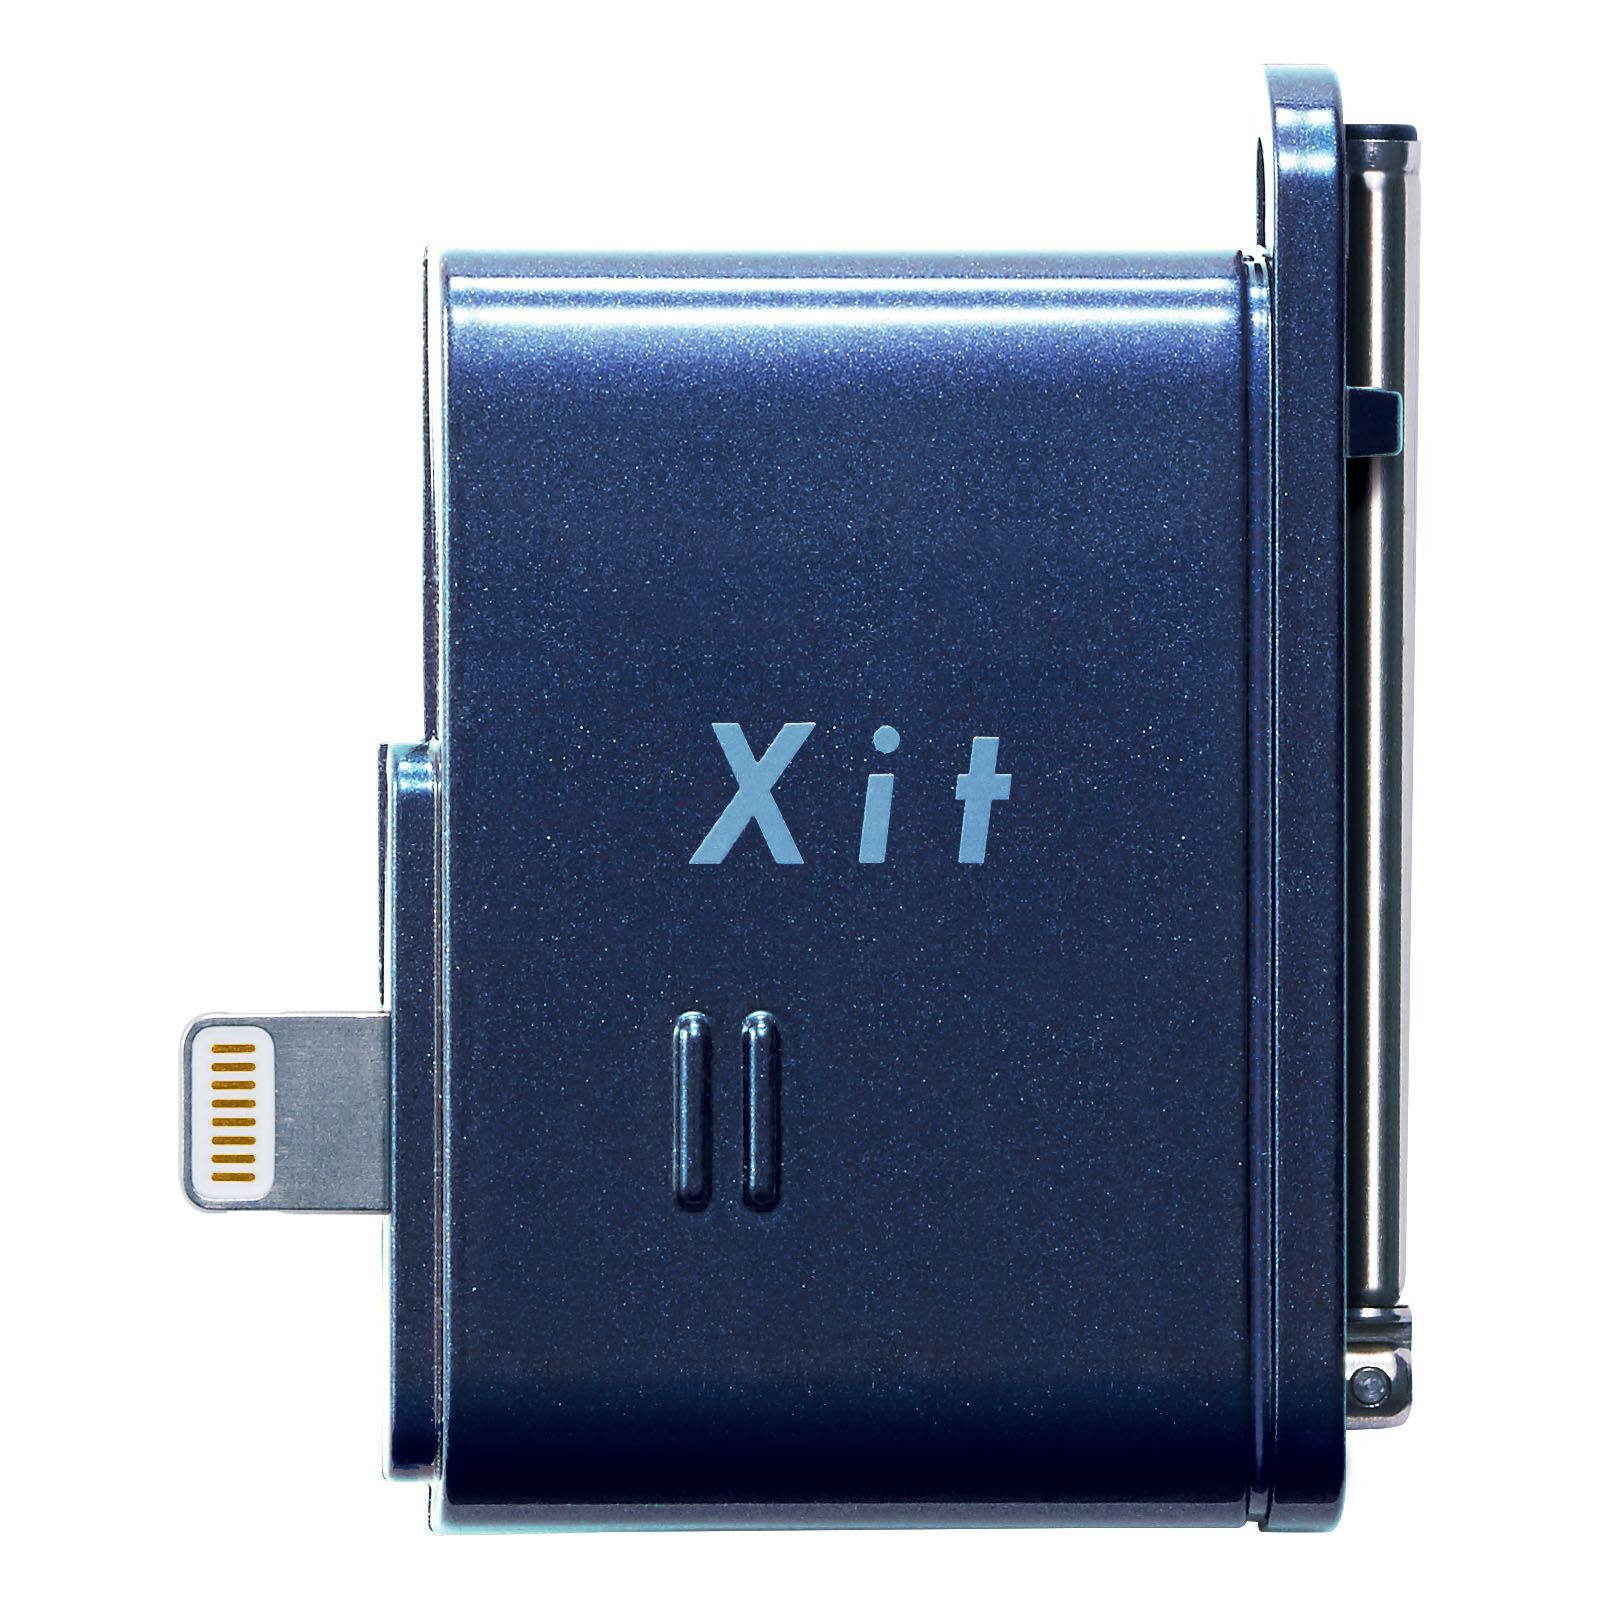 テレビチューナー向け新ブランド「Xit(サイト)」第2弾 Xit Stick「XIT